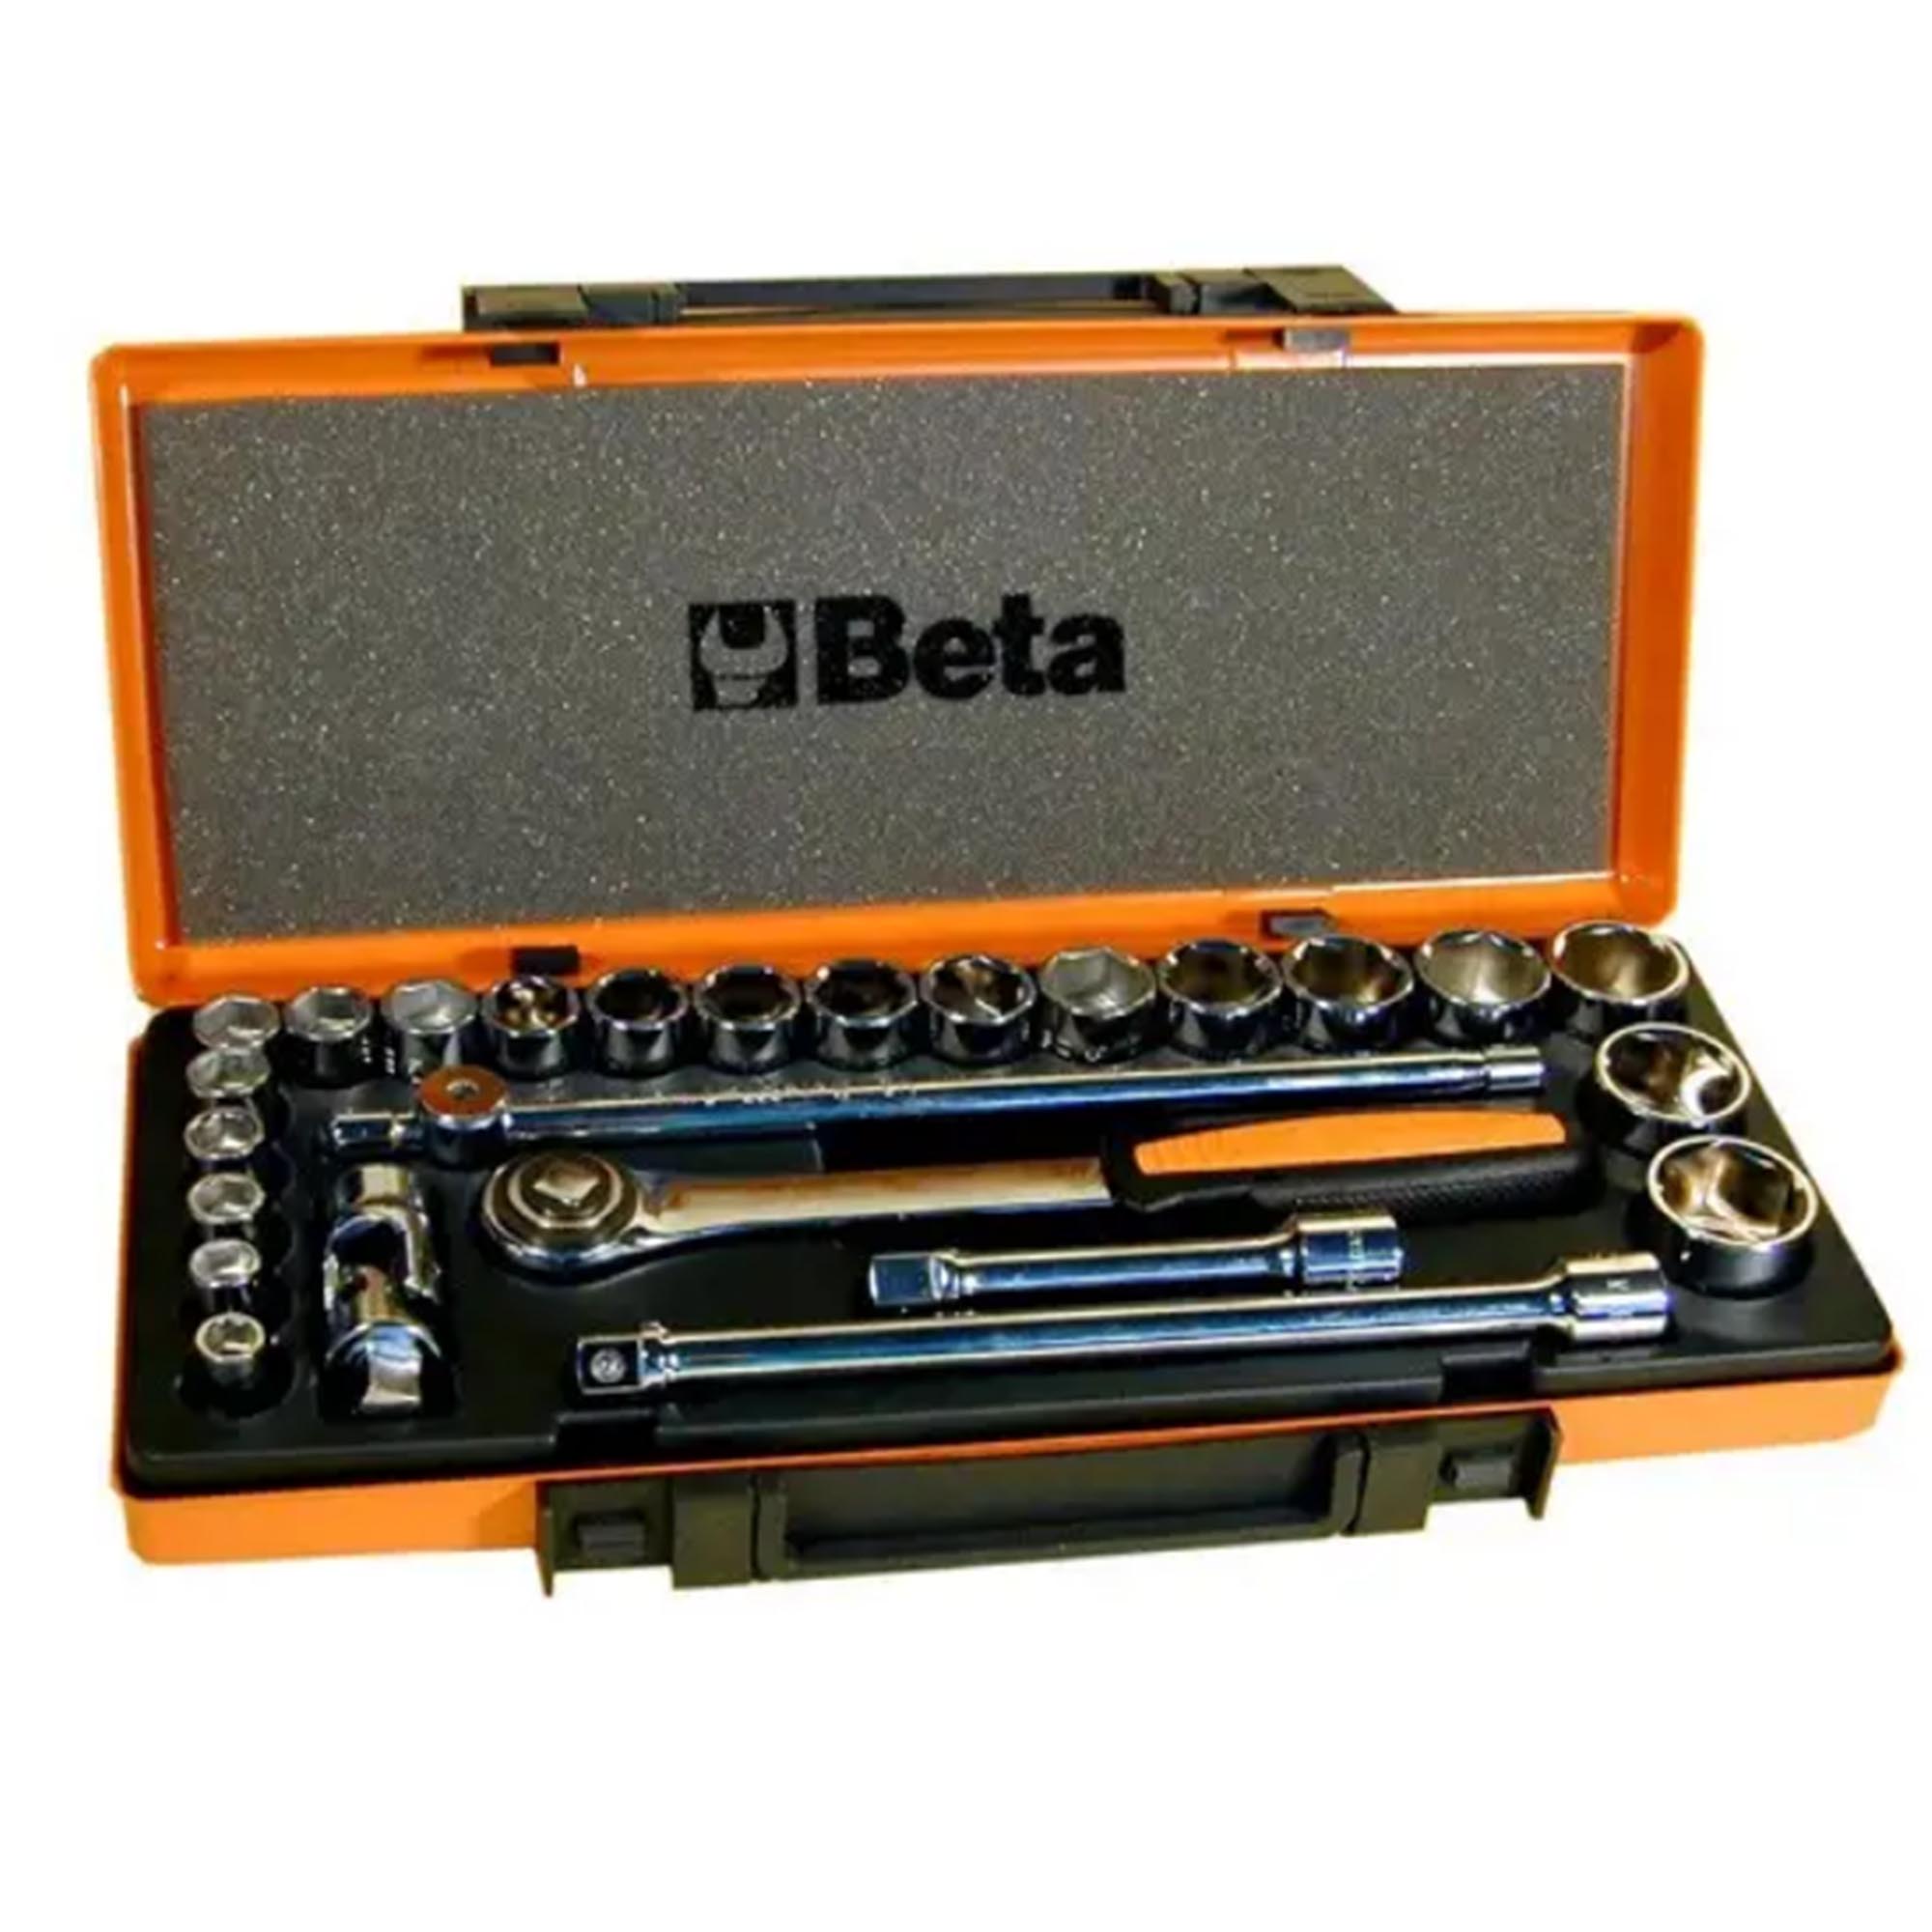 Boîte à outils Beta 920A / C20